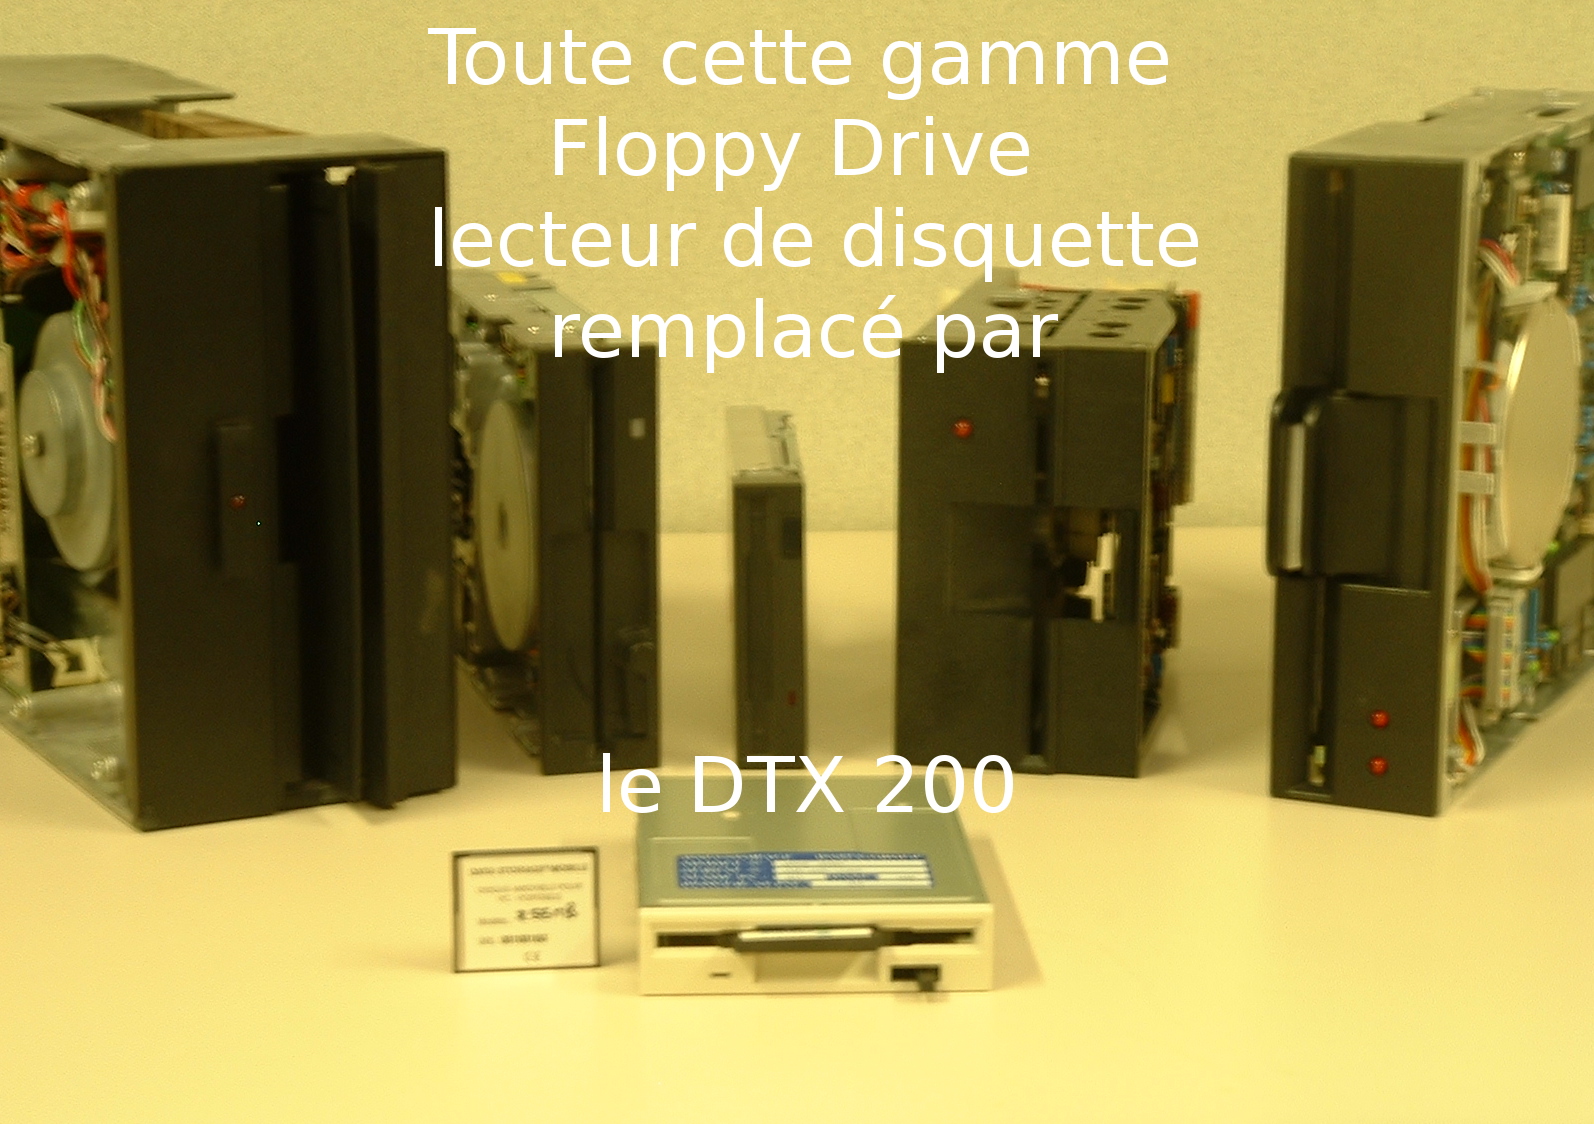 DTX 200